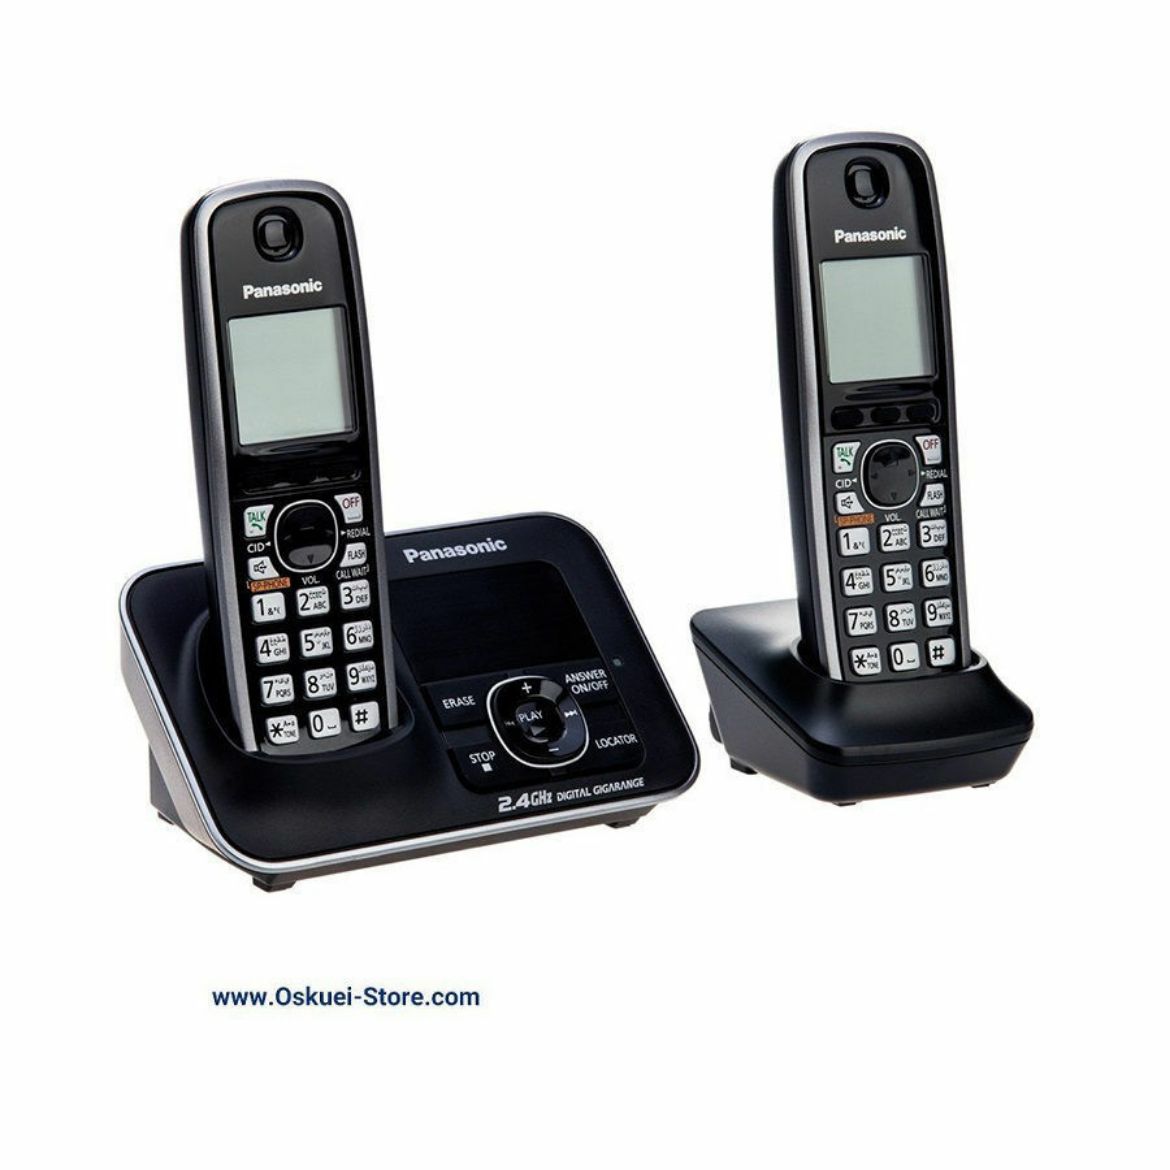 Panasonic KX-TG3722 Dual Cordless Telephones Black Left